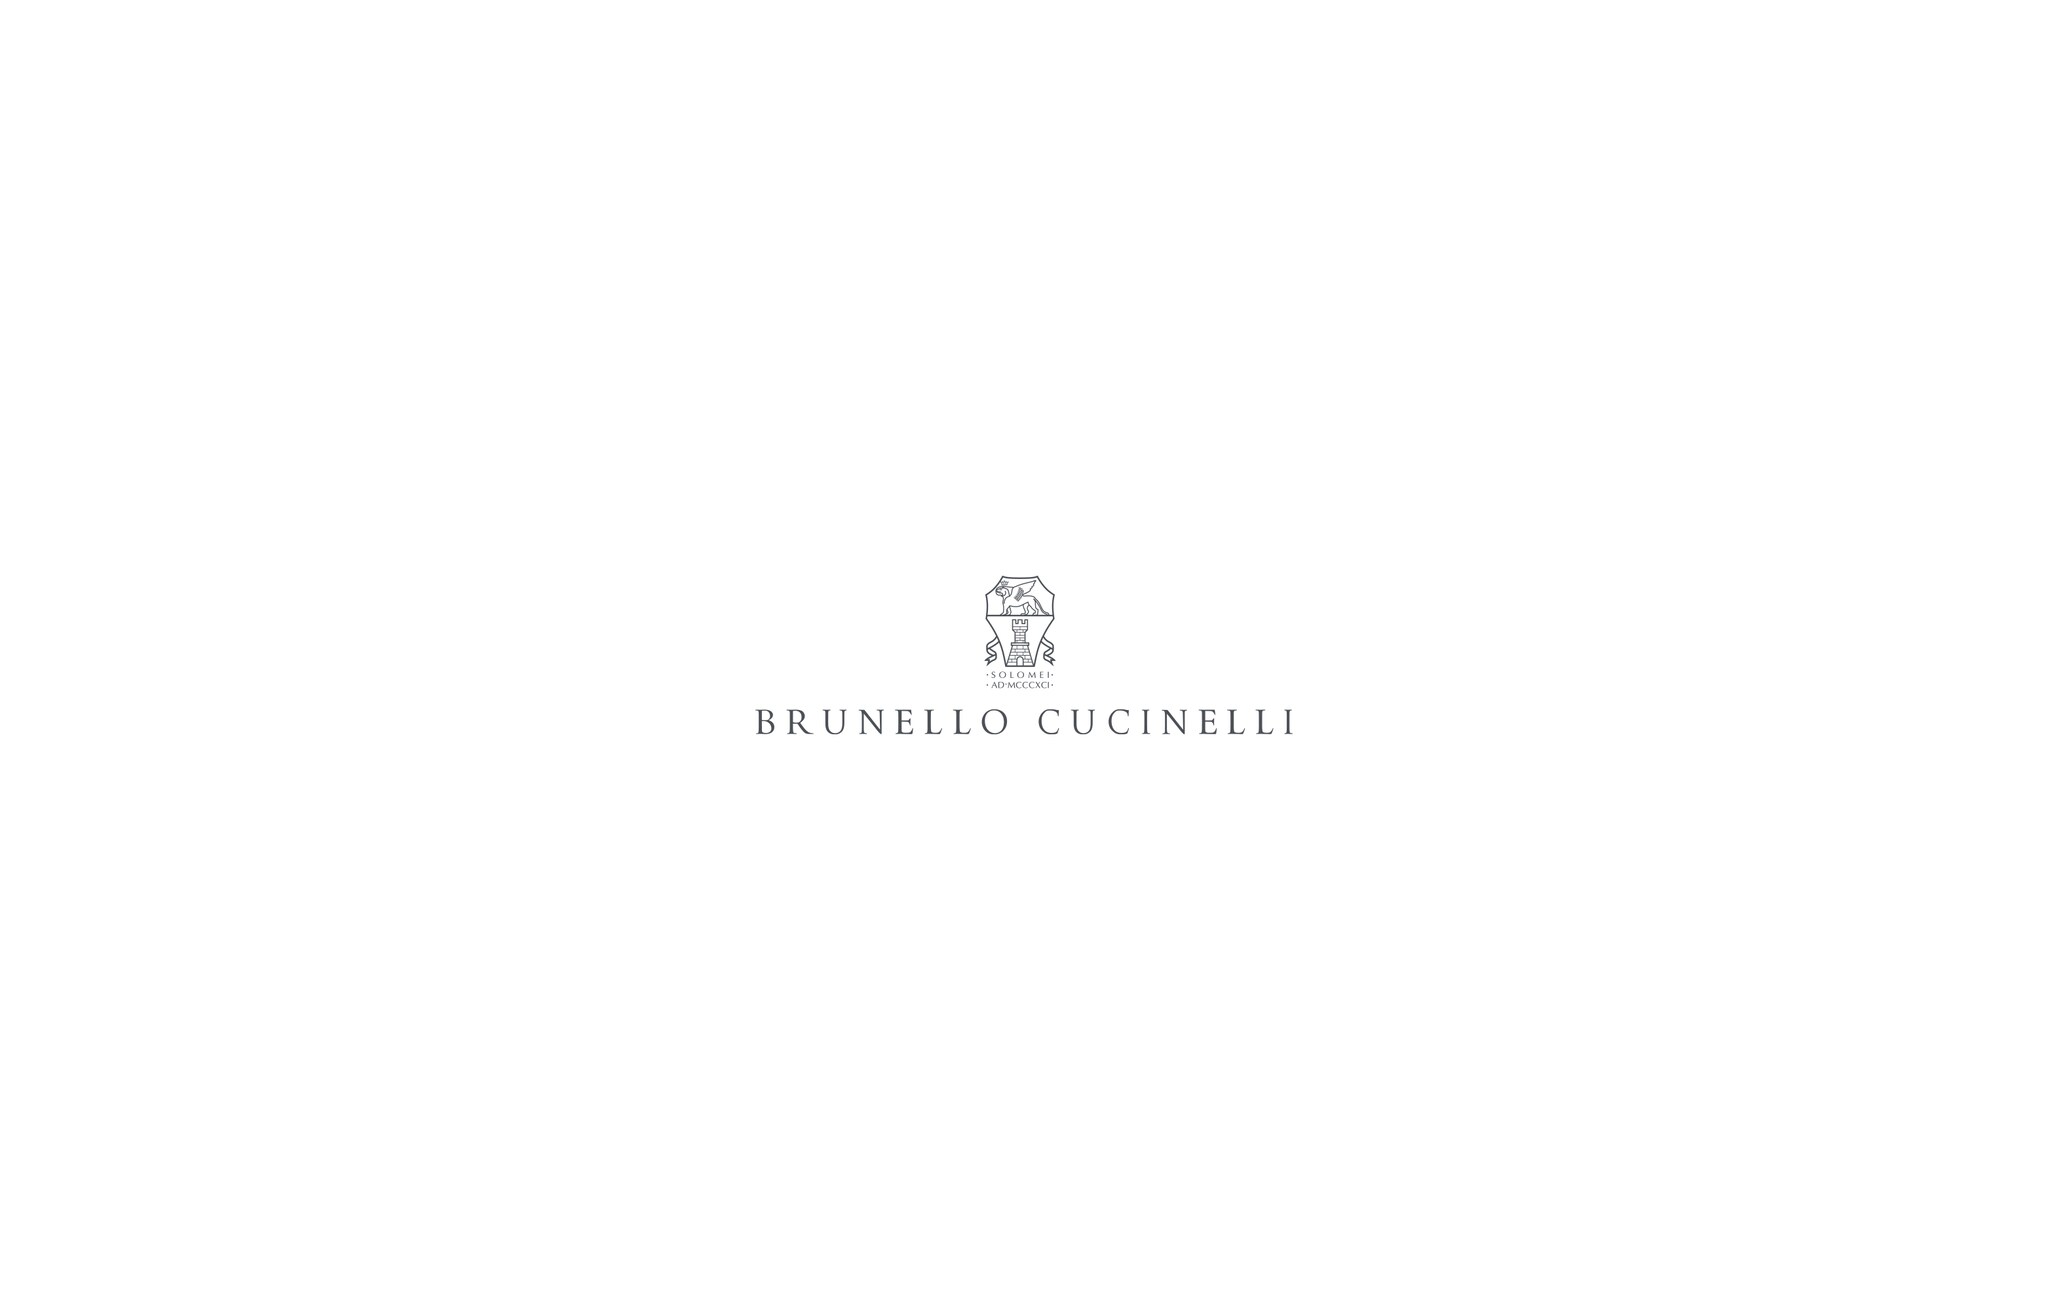  ハウンドトゥース アンコンジャケット サンド メンズ - Brunello Cucinelli 